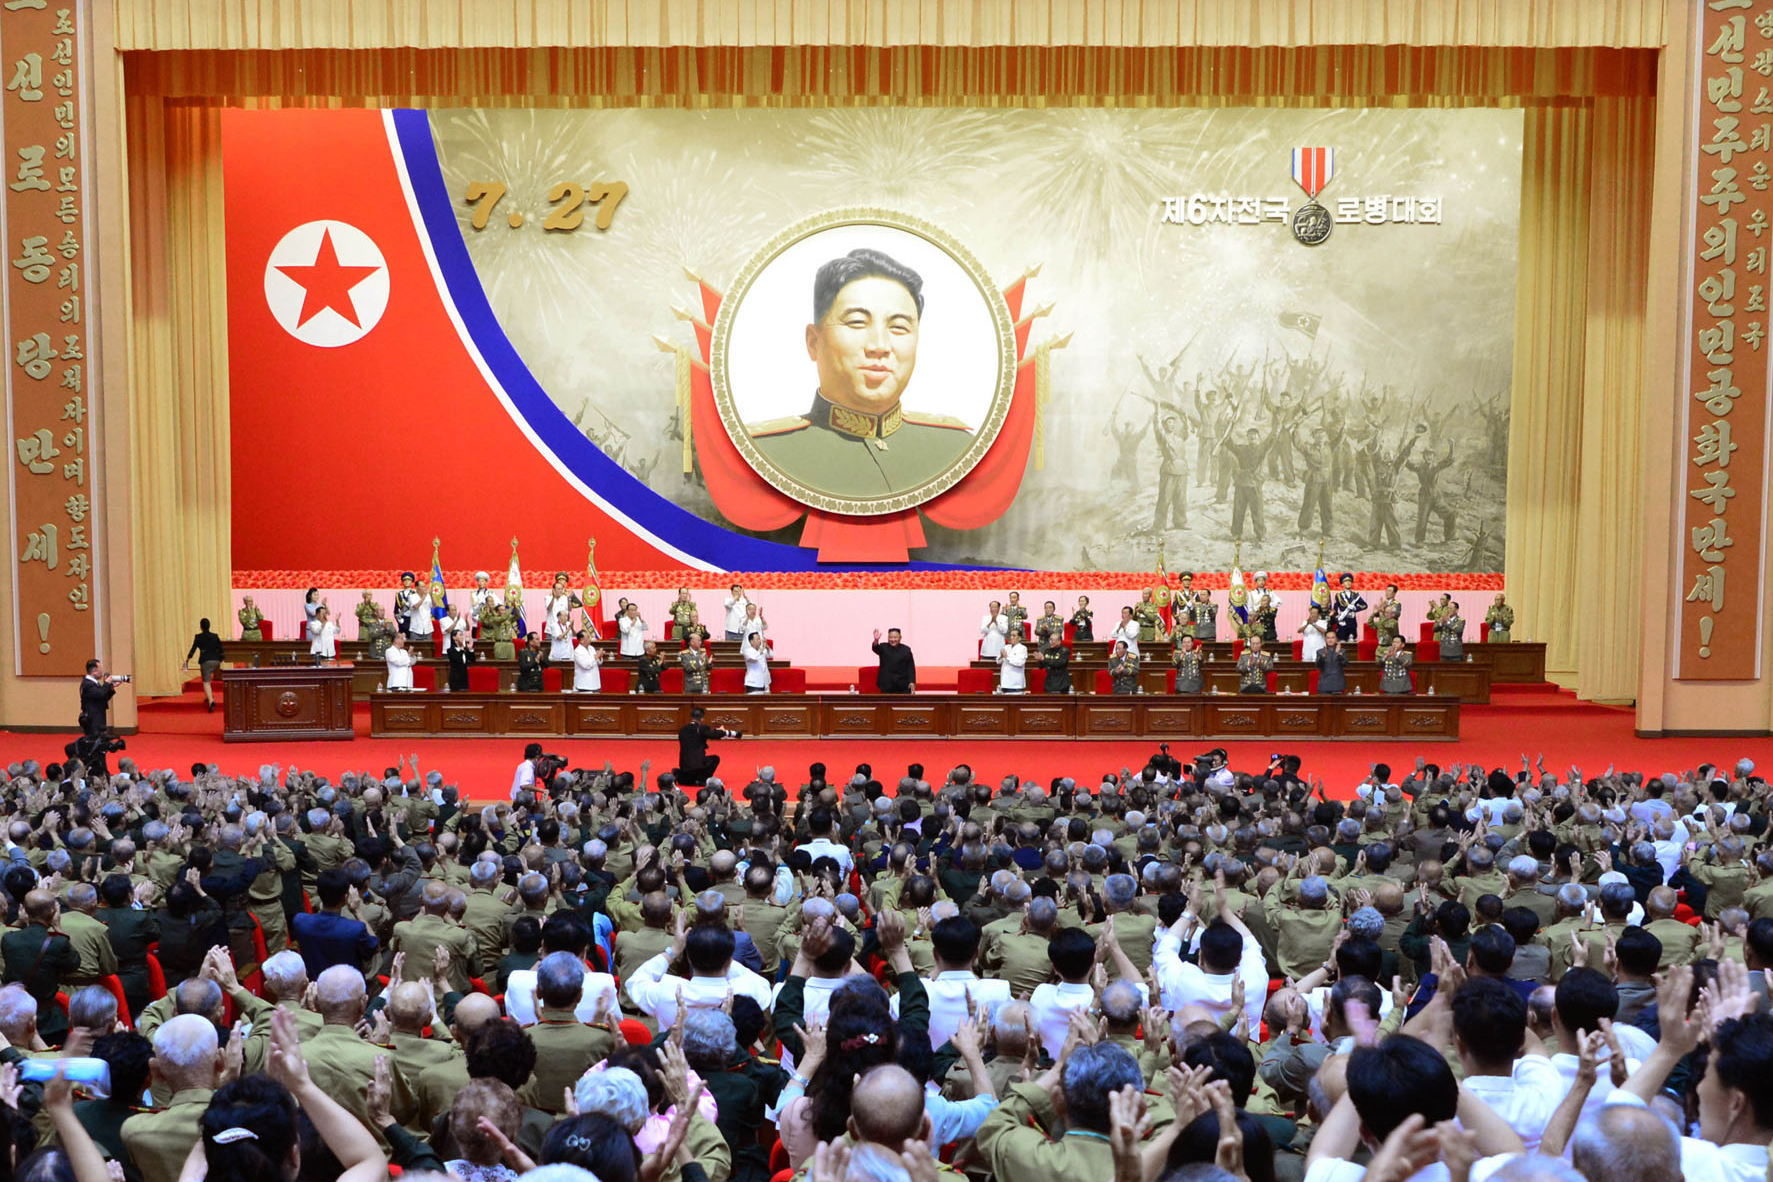 Kim Jong Un durante un discurso.
POLITICA INTERNACIONAL -/KCNA/dpa
